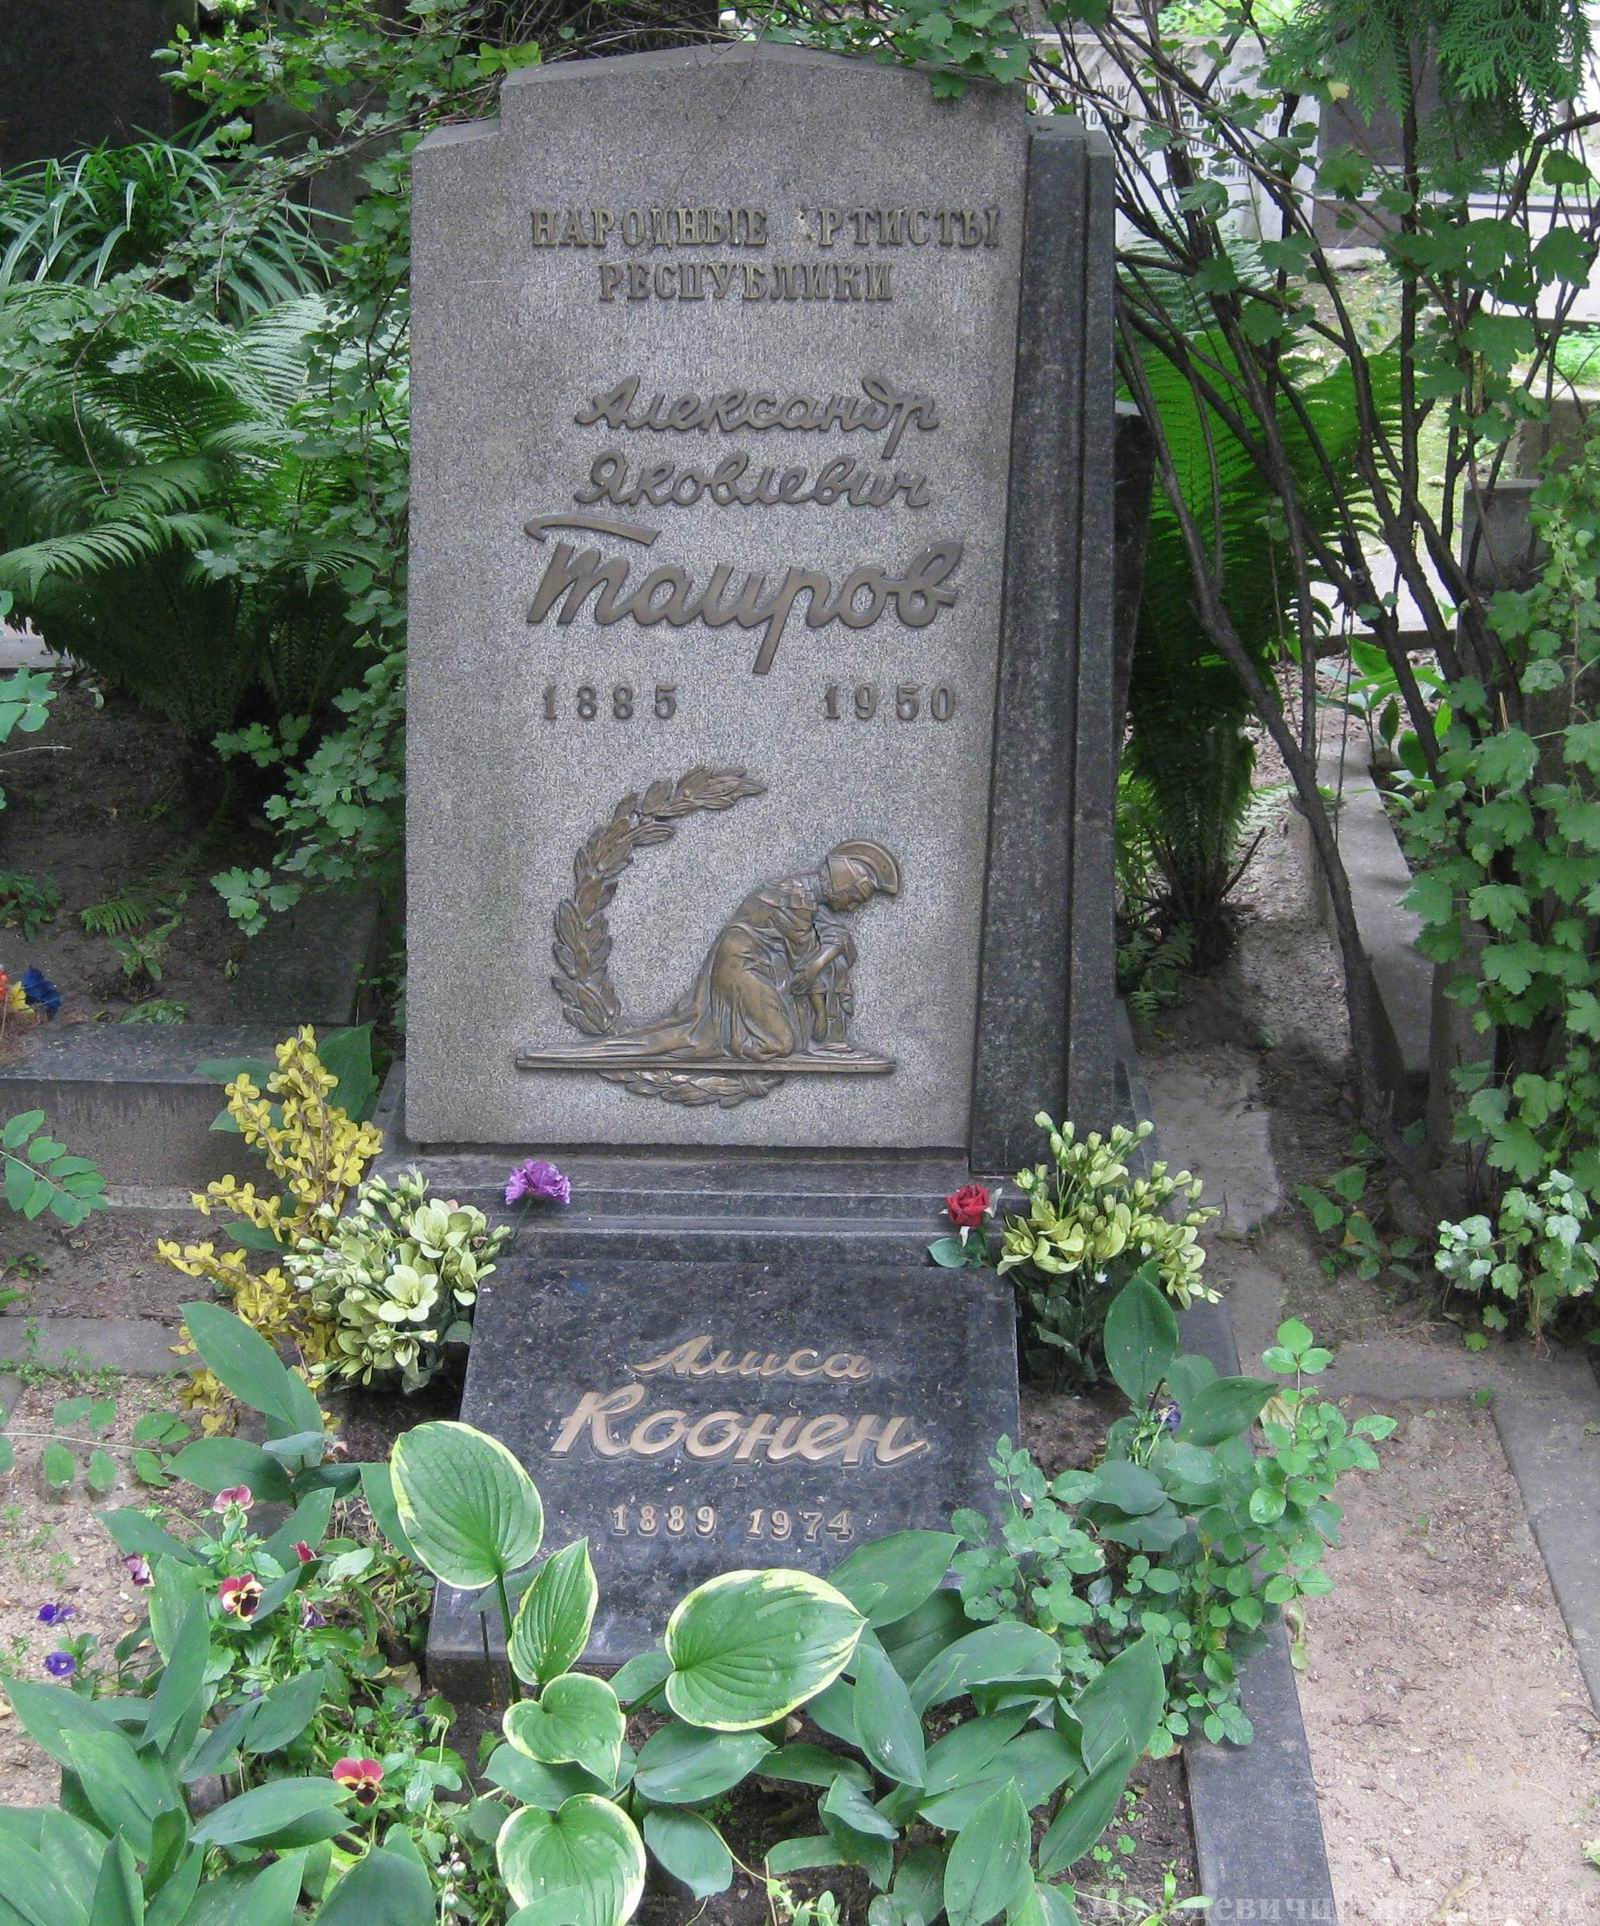 Памятник на могиле Таирова А.Я. (1885–1950), ск. Д.Народницкий, арх. Е.Розенблюм, на Новодевичьем кладбище (2–14–7). Нажмите левую кнопку мыши чтобы увидеть деталь памятника.